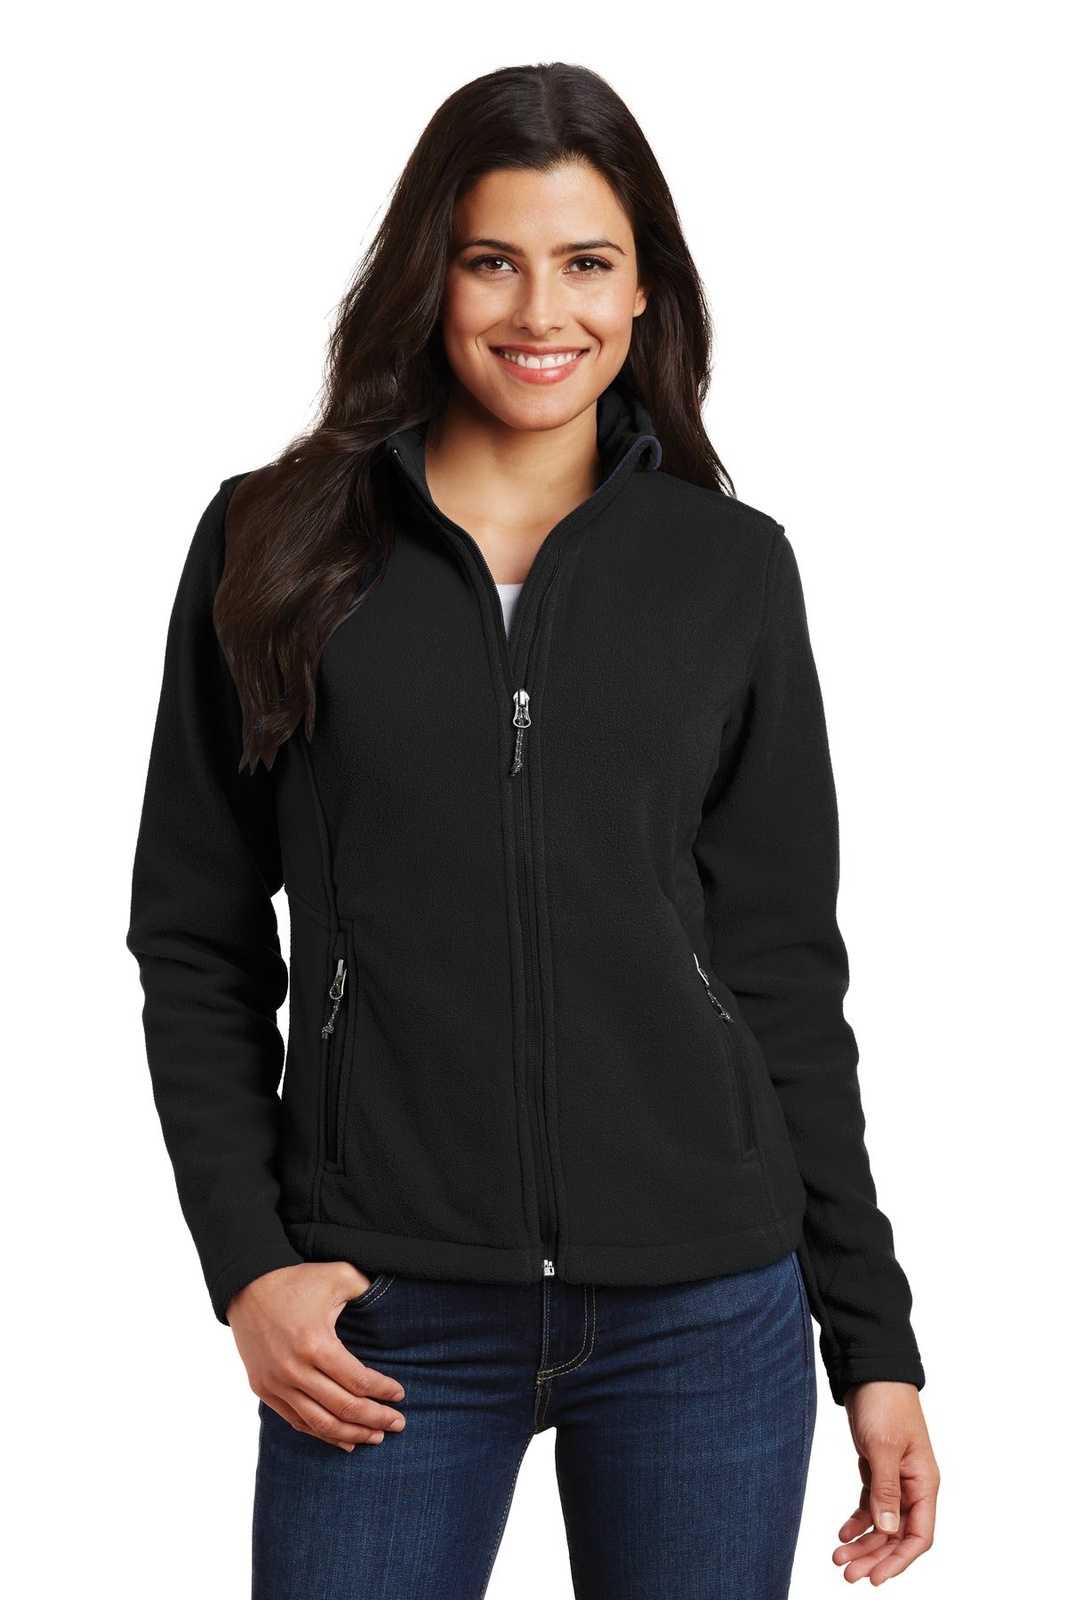 Port Authority L217 Ladies Value Fleece Jacket - Black - HIT a Double - 1